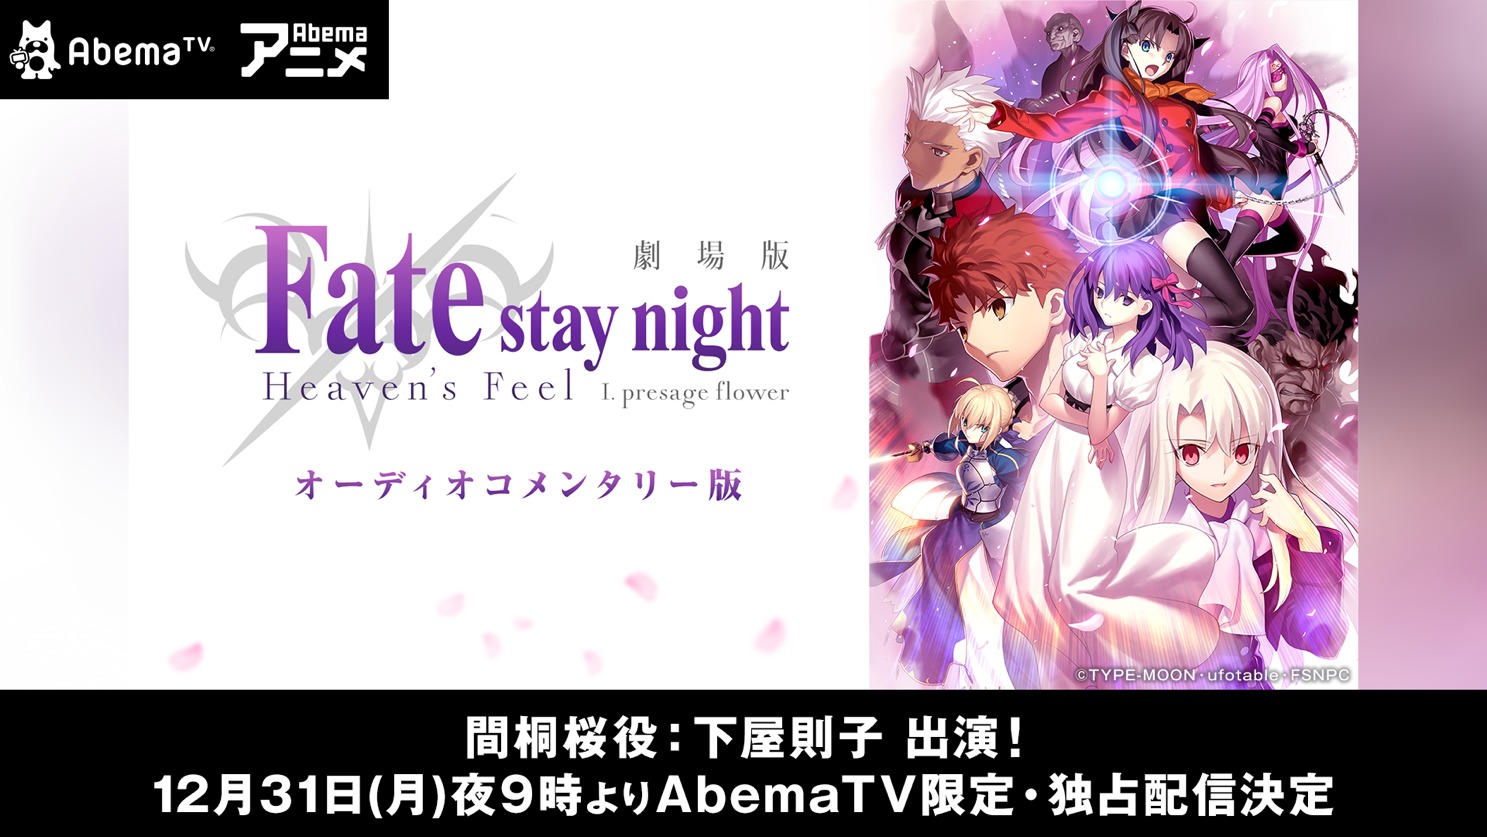 『劇場版「Fate/stay night [Heaven's Feel]」 I.presage flower』AbemaTV限定オーディオコメンタリー版『～もし、わたしがコメンタリーをやったら、許せませんか？～』  (C)TYPE-MOON・ufotable・FSNPC